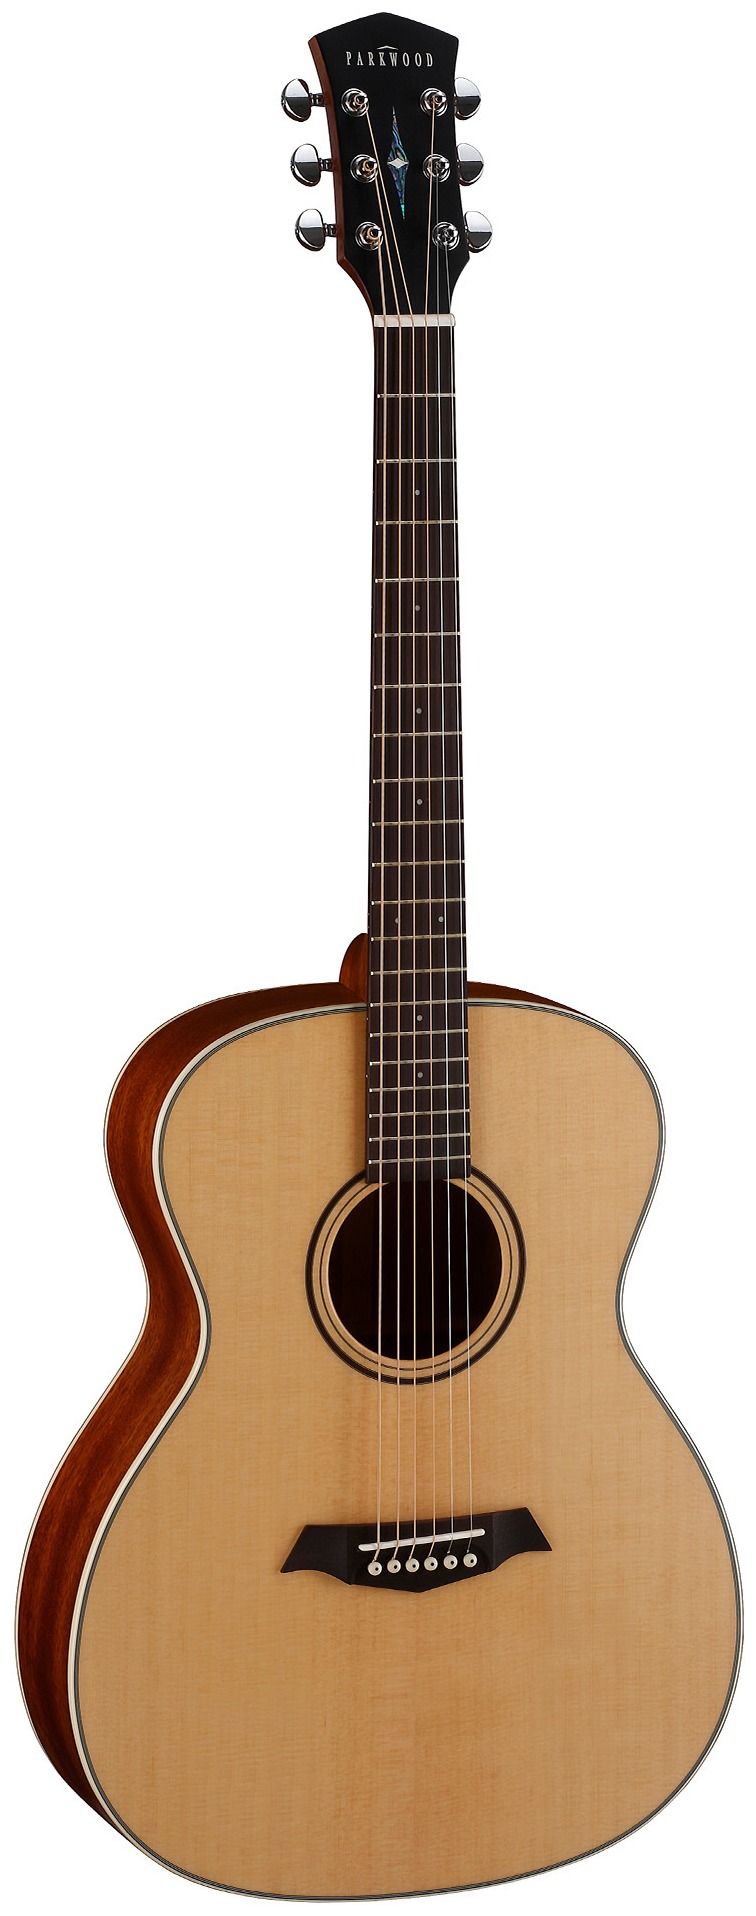 Акустические гитары Parkwood S22-GT (чехол в комплекте)